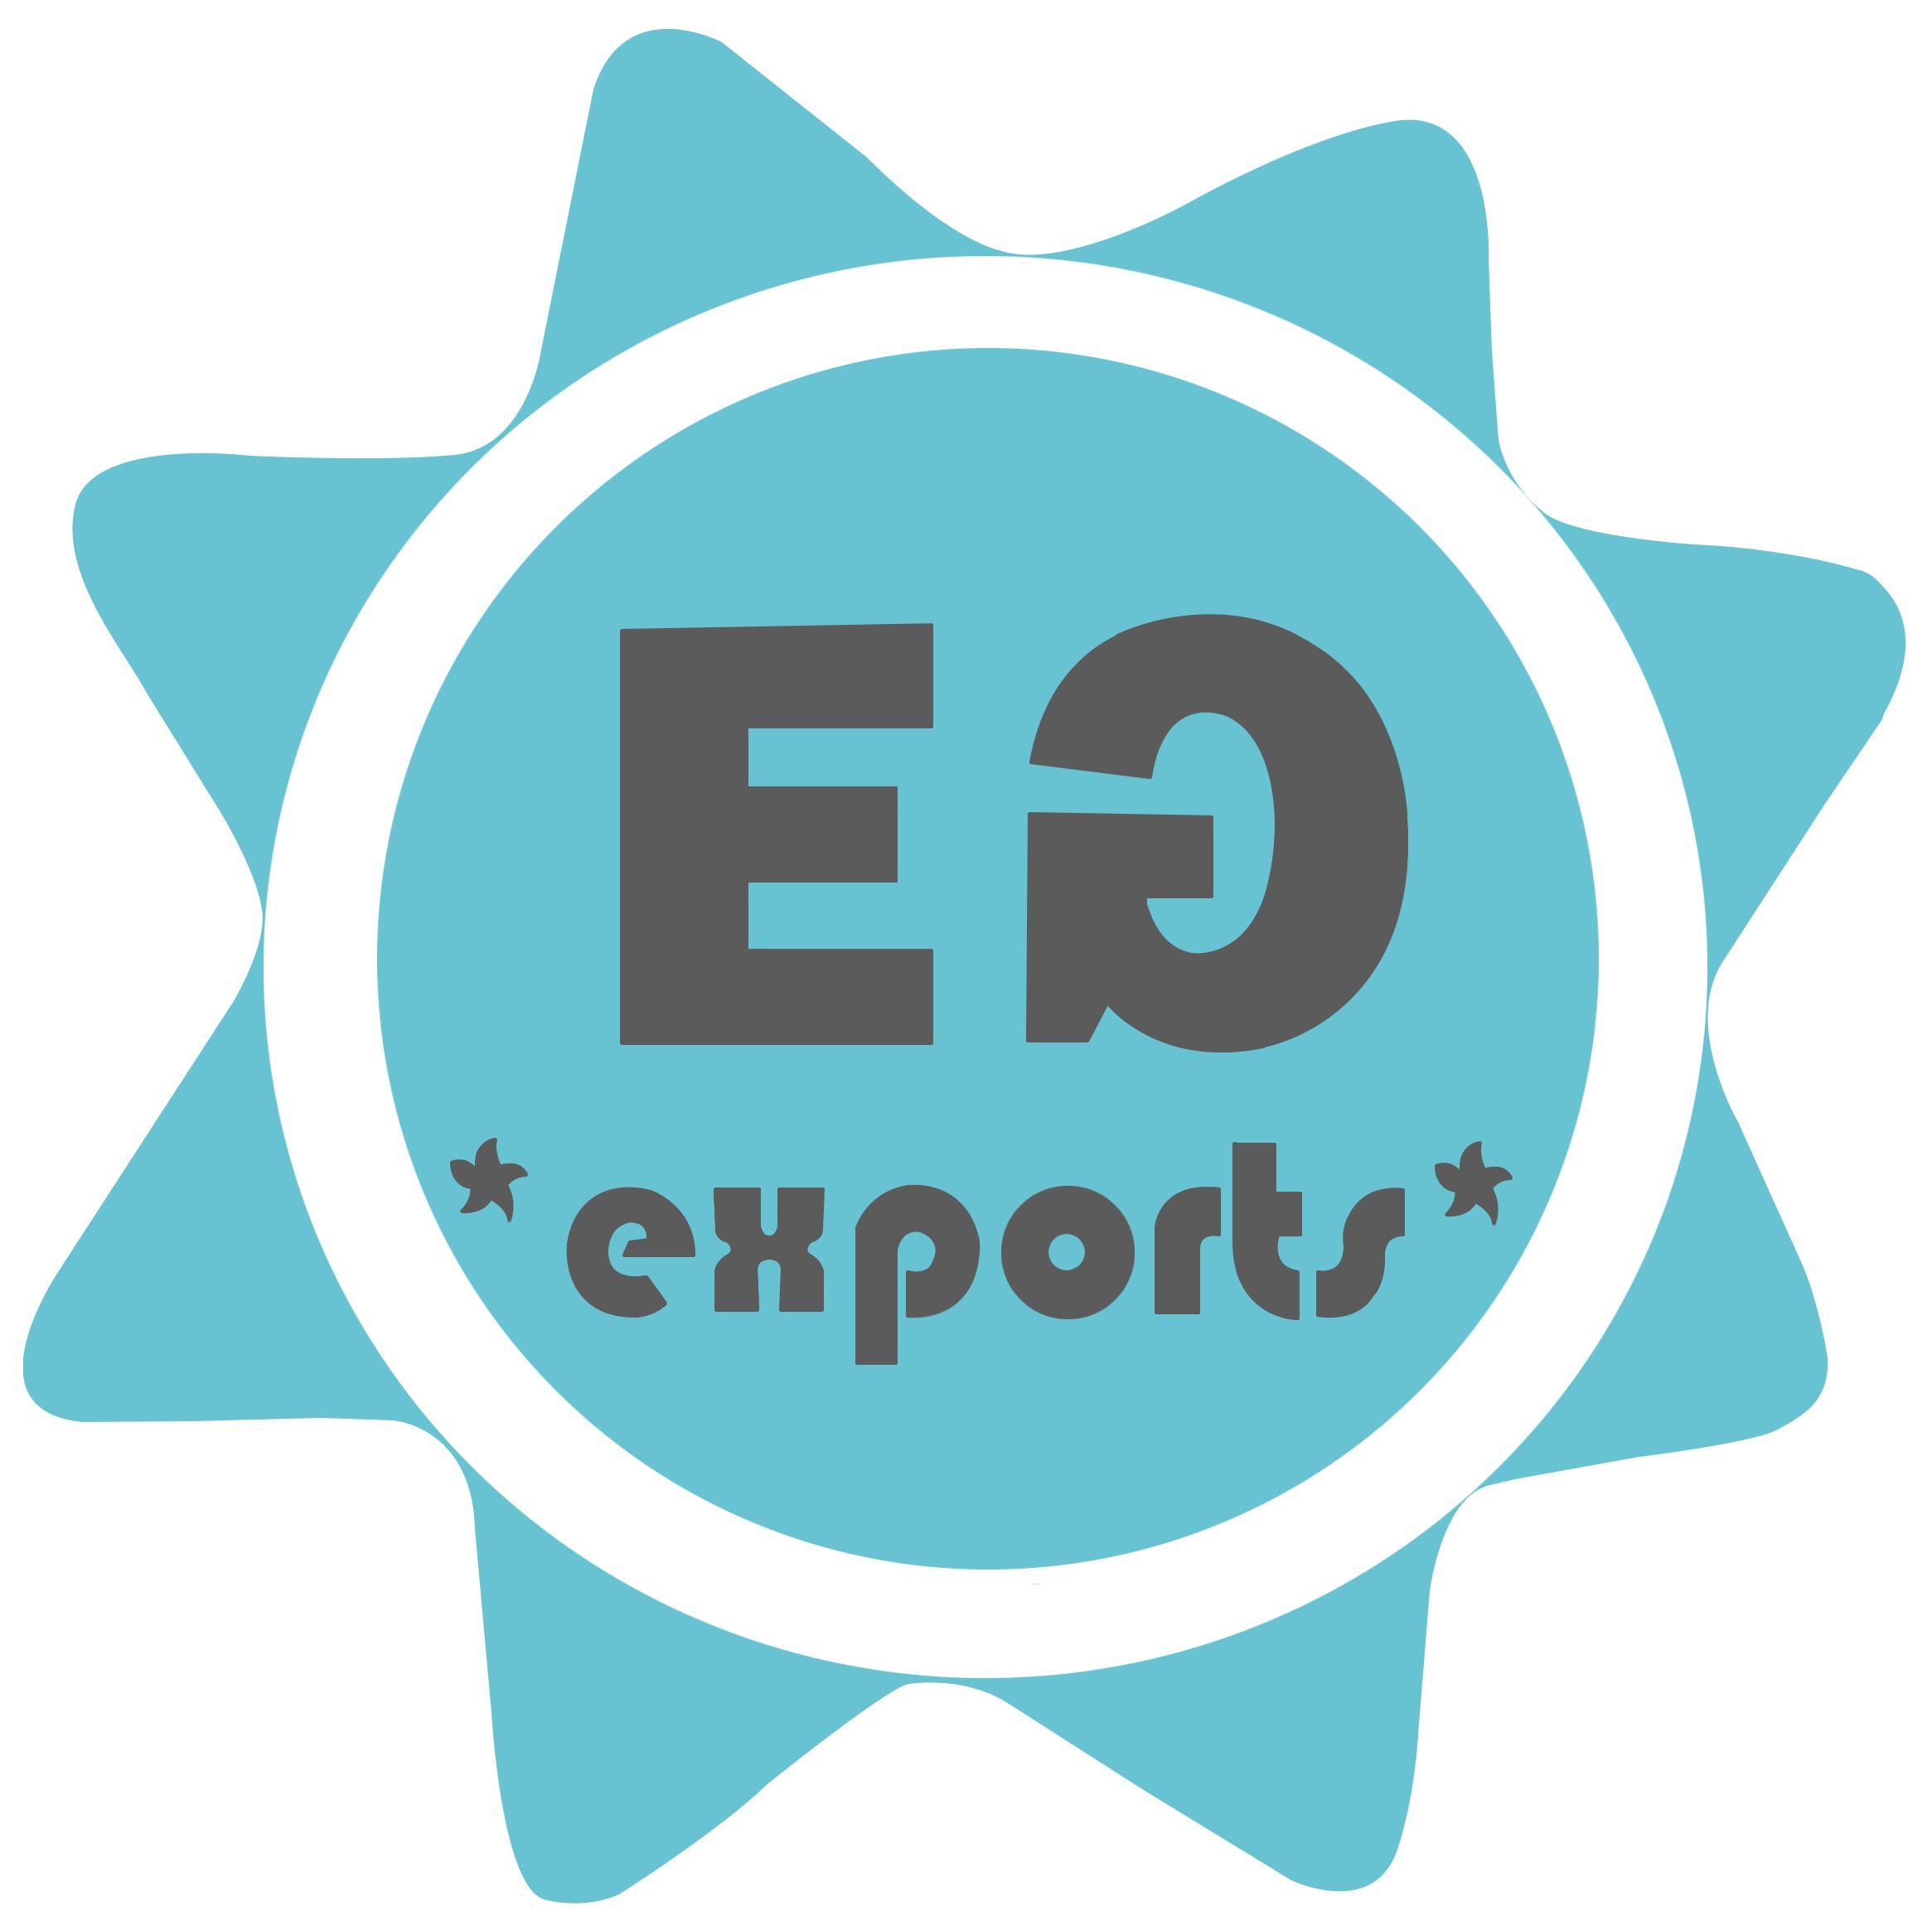 Eden Garden Exports Reaches 與Odoo的合作中達到新高。